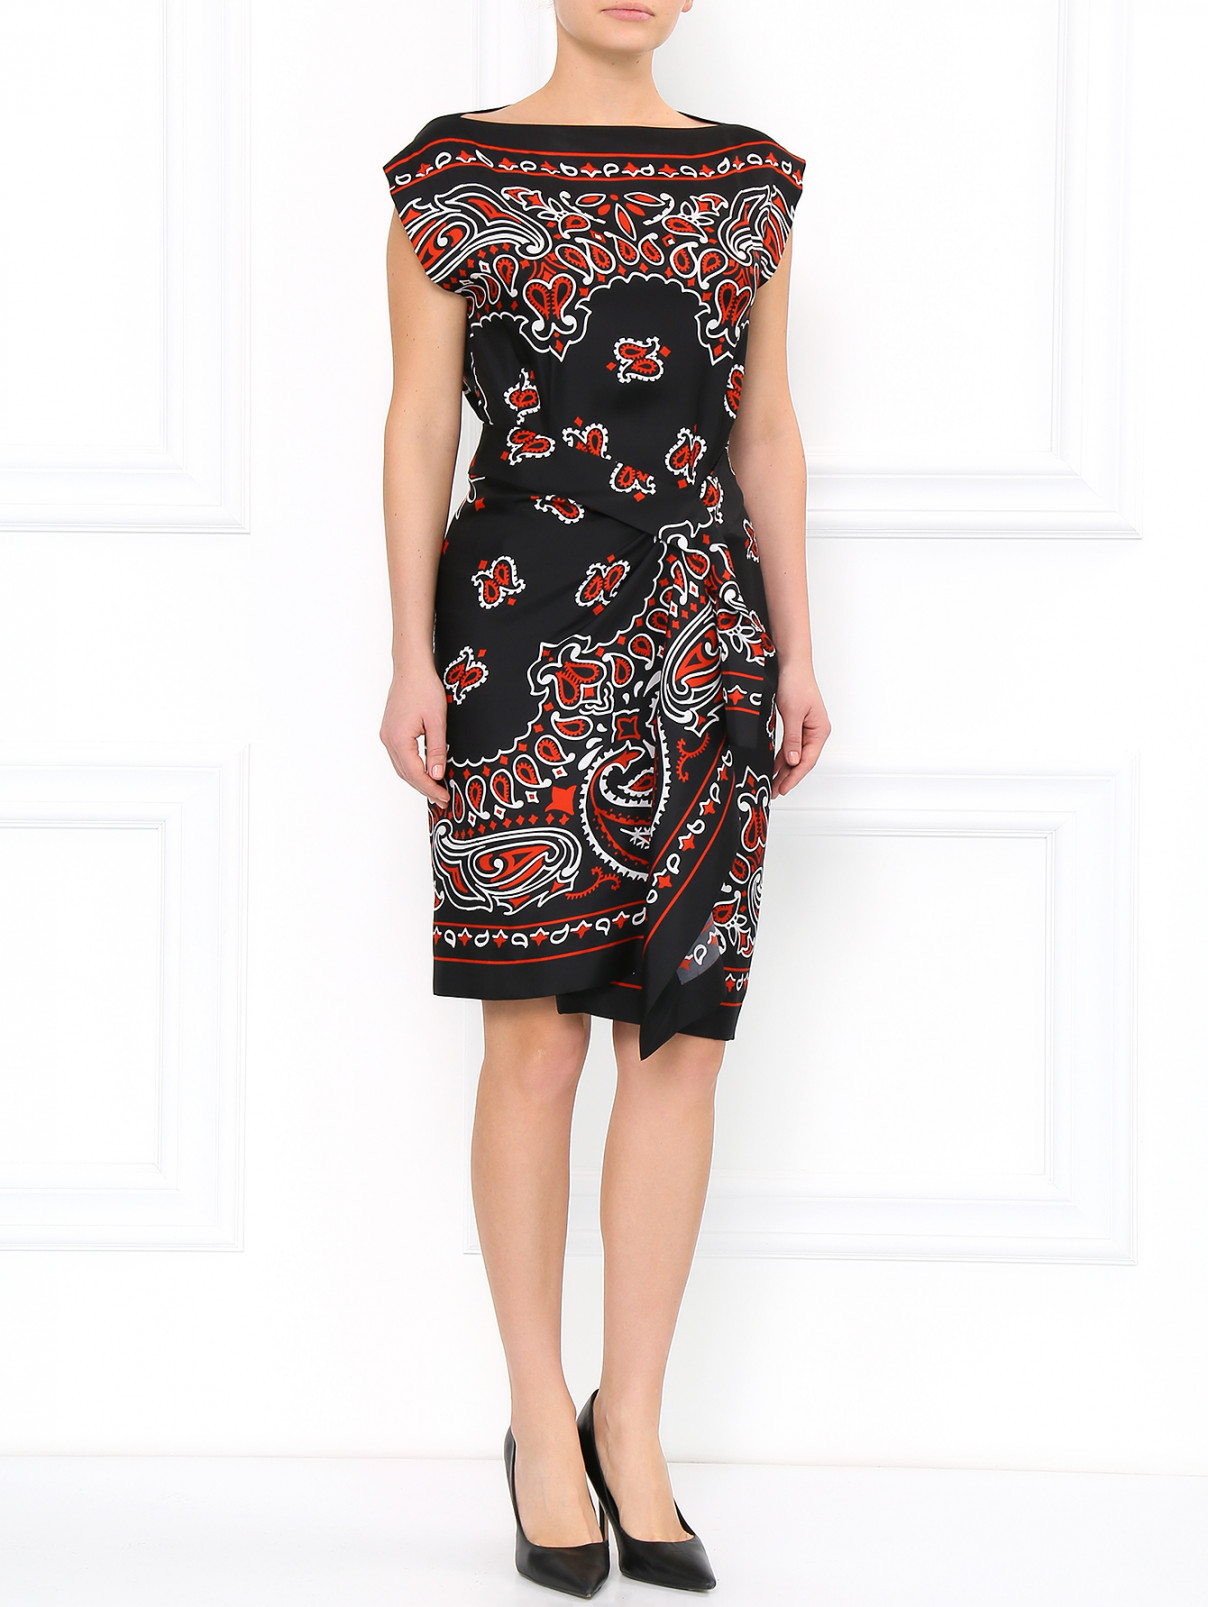 Платье из шелка с принтом "пейсли" Moschino  –  Модель Общий вид  – Цвет:  Черный